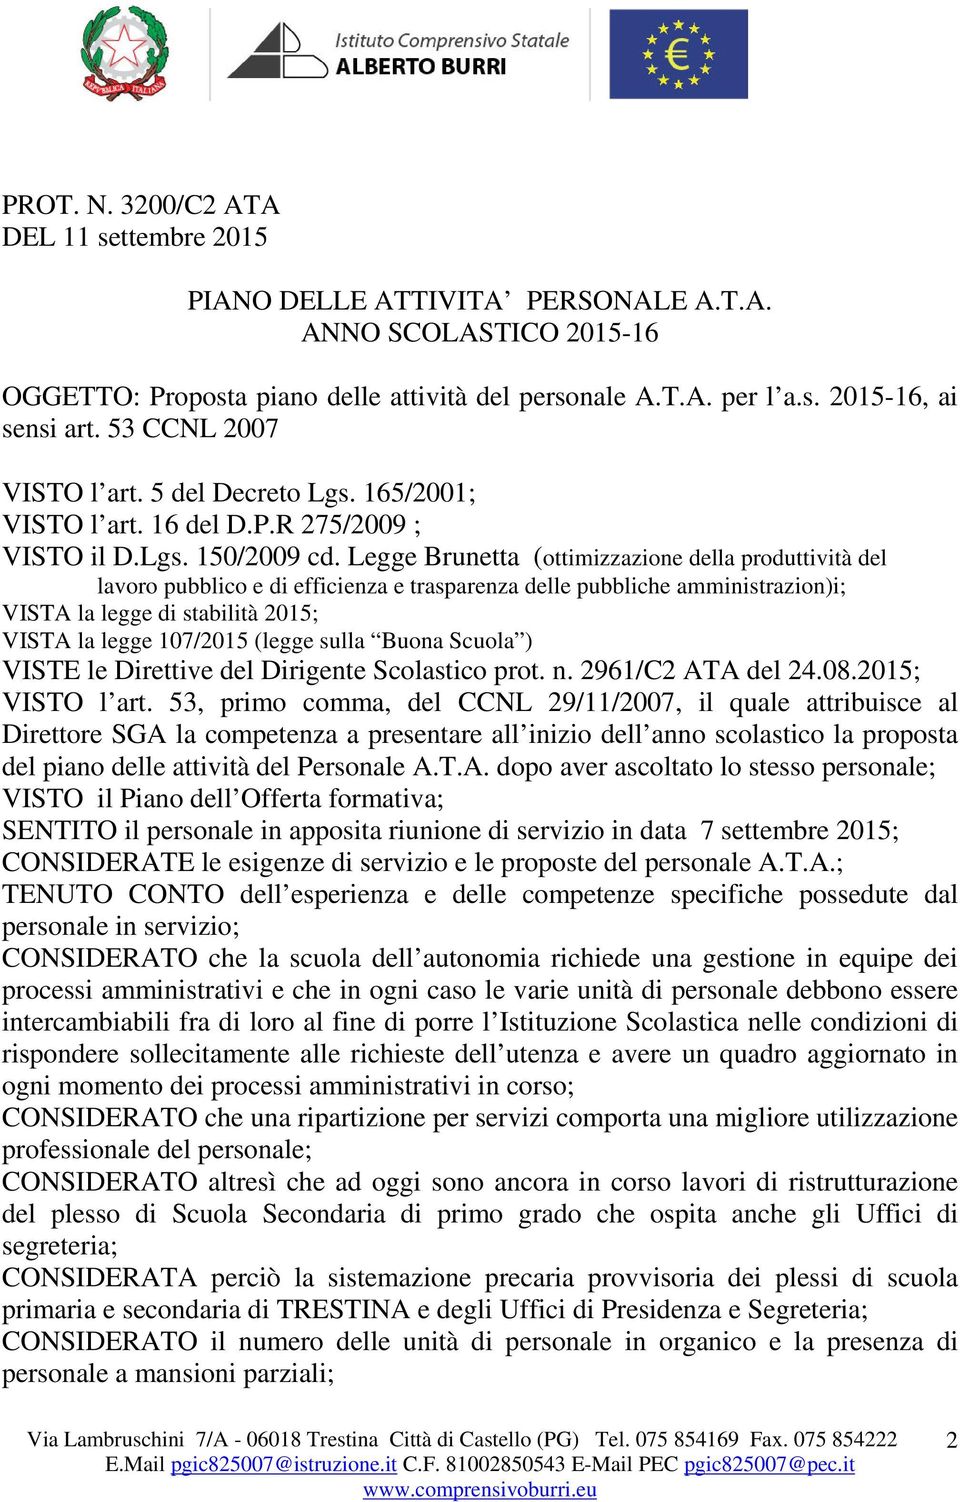 Legge Brunetta (ottimizzazione della produttività del lavoro pubblico e di efficienza e trasparenza delle pubbliche amministrazion)i; VISTA la legge di stabilità 2015; VISTA la legge 107/2015 (legge